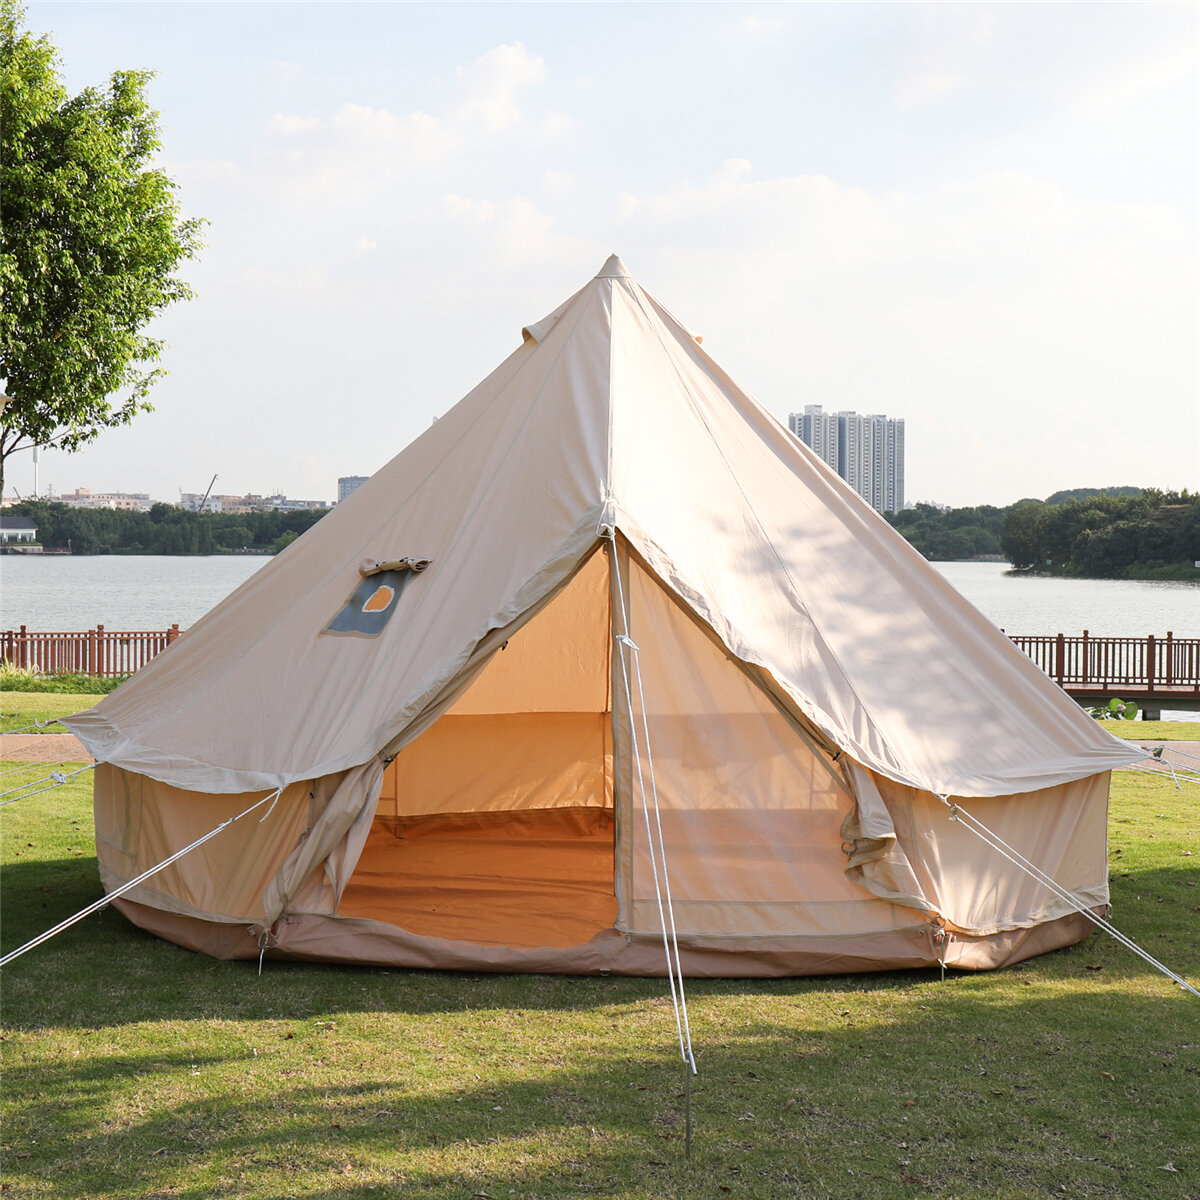 Σκηνή υπαίθριας σκηνής κάμπινγκ από βαμβακερό καμβά πυραμίδας 4 σεζόν Camping Glamping Αδιάβροχο Living yurt Μέγεθος 3m 4m για Οικογενειακή Σκηνή